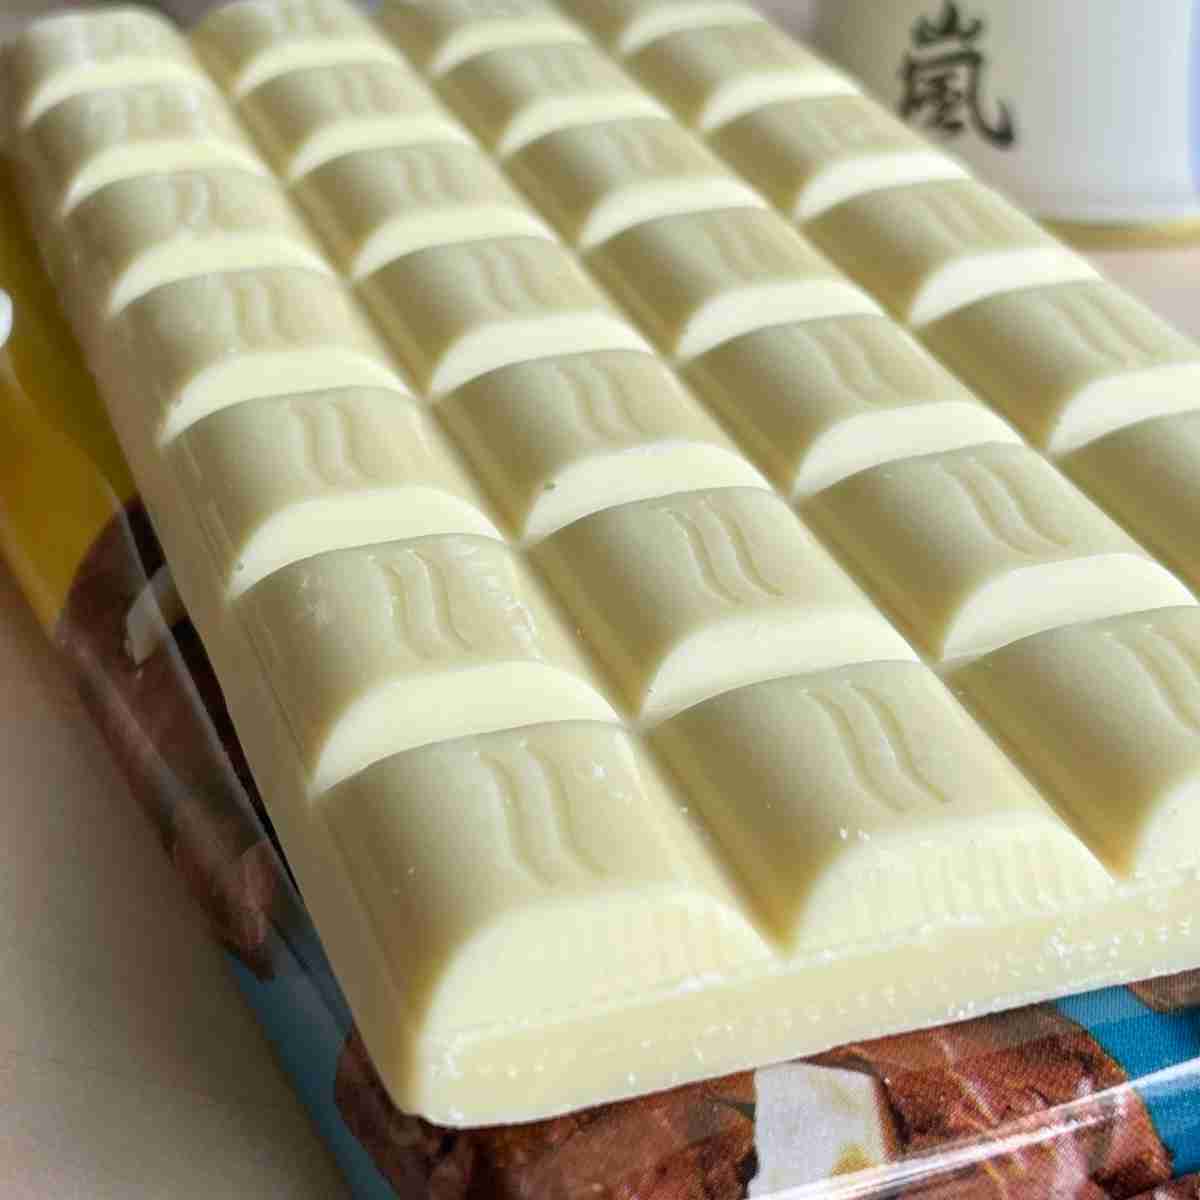 White chocolate bar